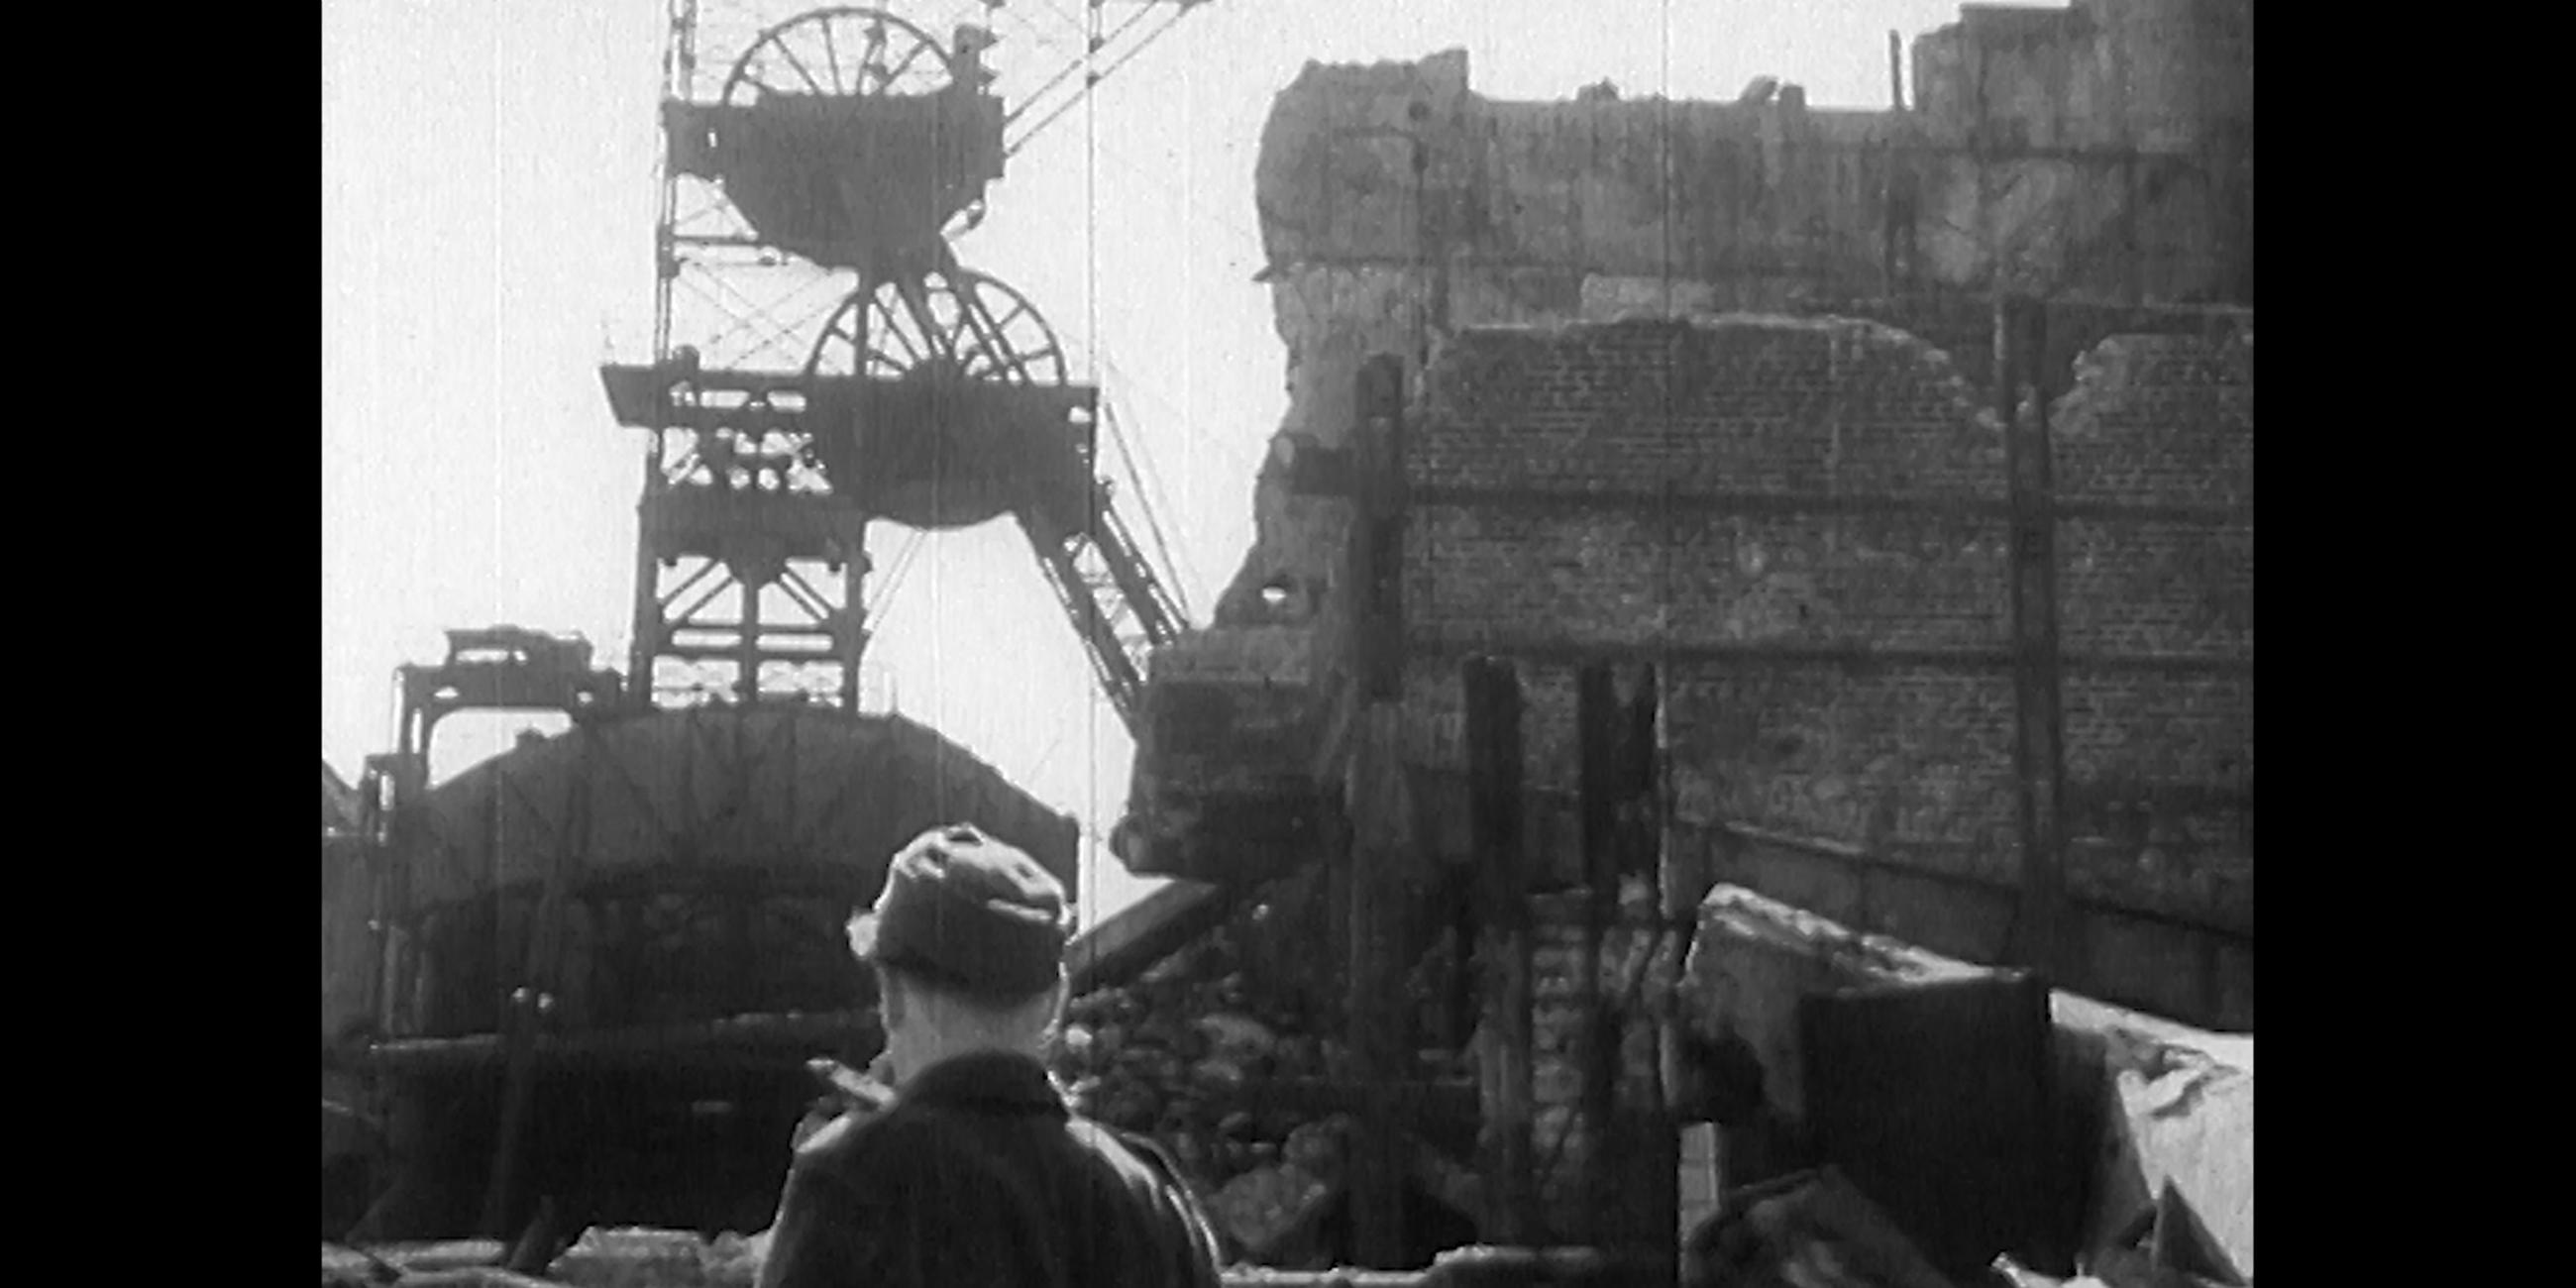 Schwarz-weiß Fotografie eines Bergarbeiters, der vor einem großen Trümmerhaufen aus Stein steht. 